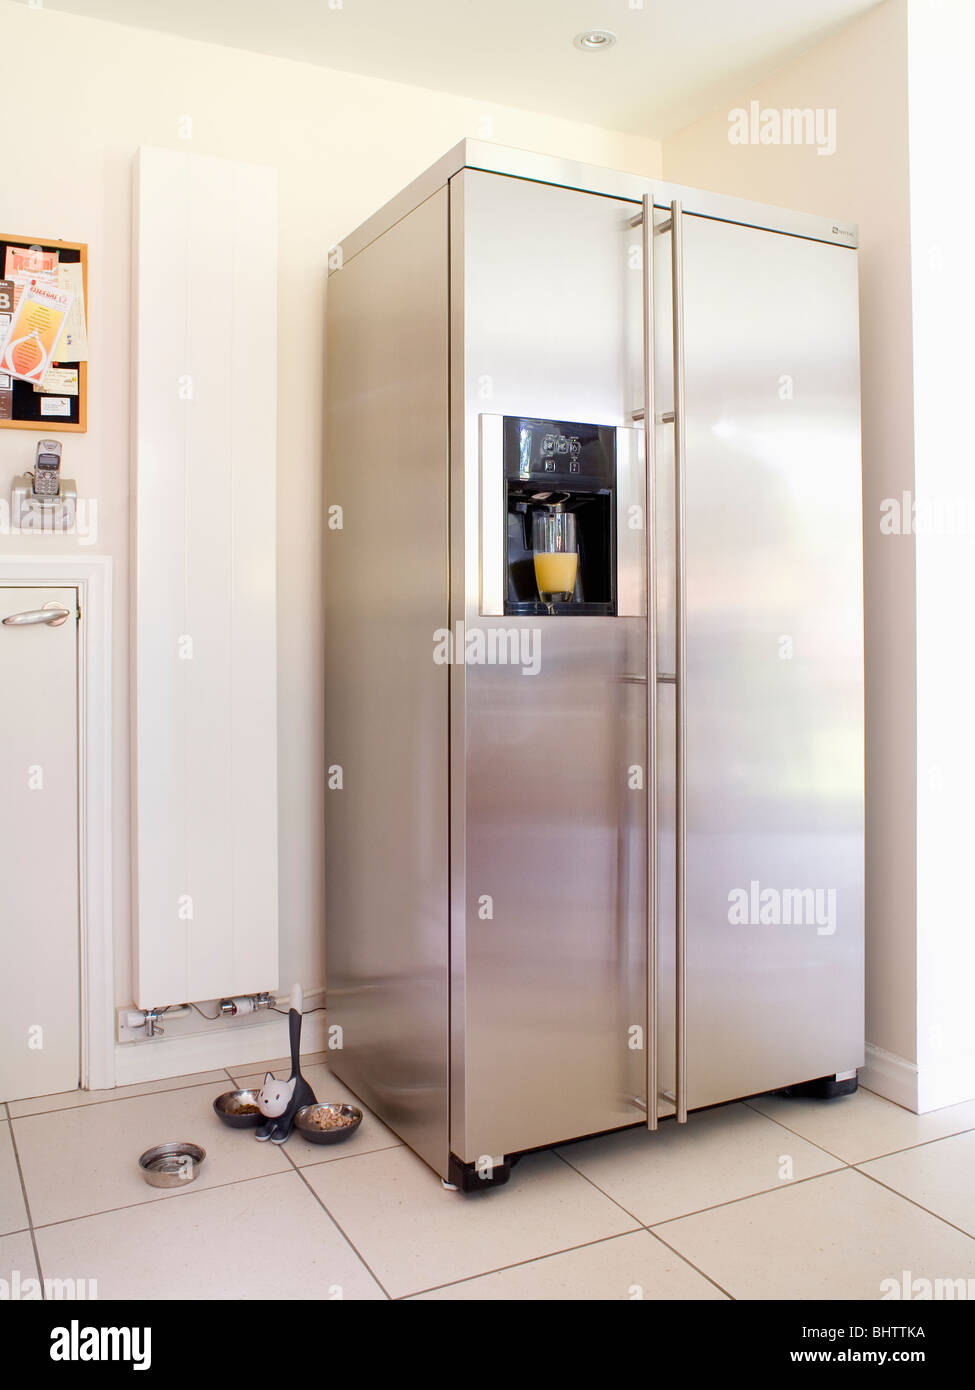 Grand American-style en acier inoxydable réfrigérateur-congélateur à côté  du radiateur blanc vertical dans une cuisine moderne Photo Stock - Alamy